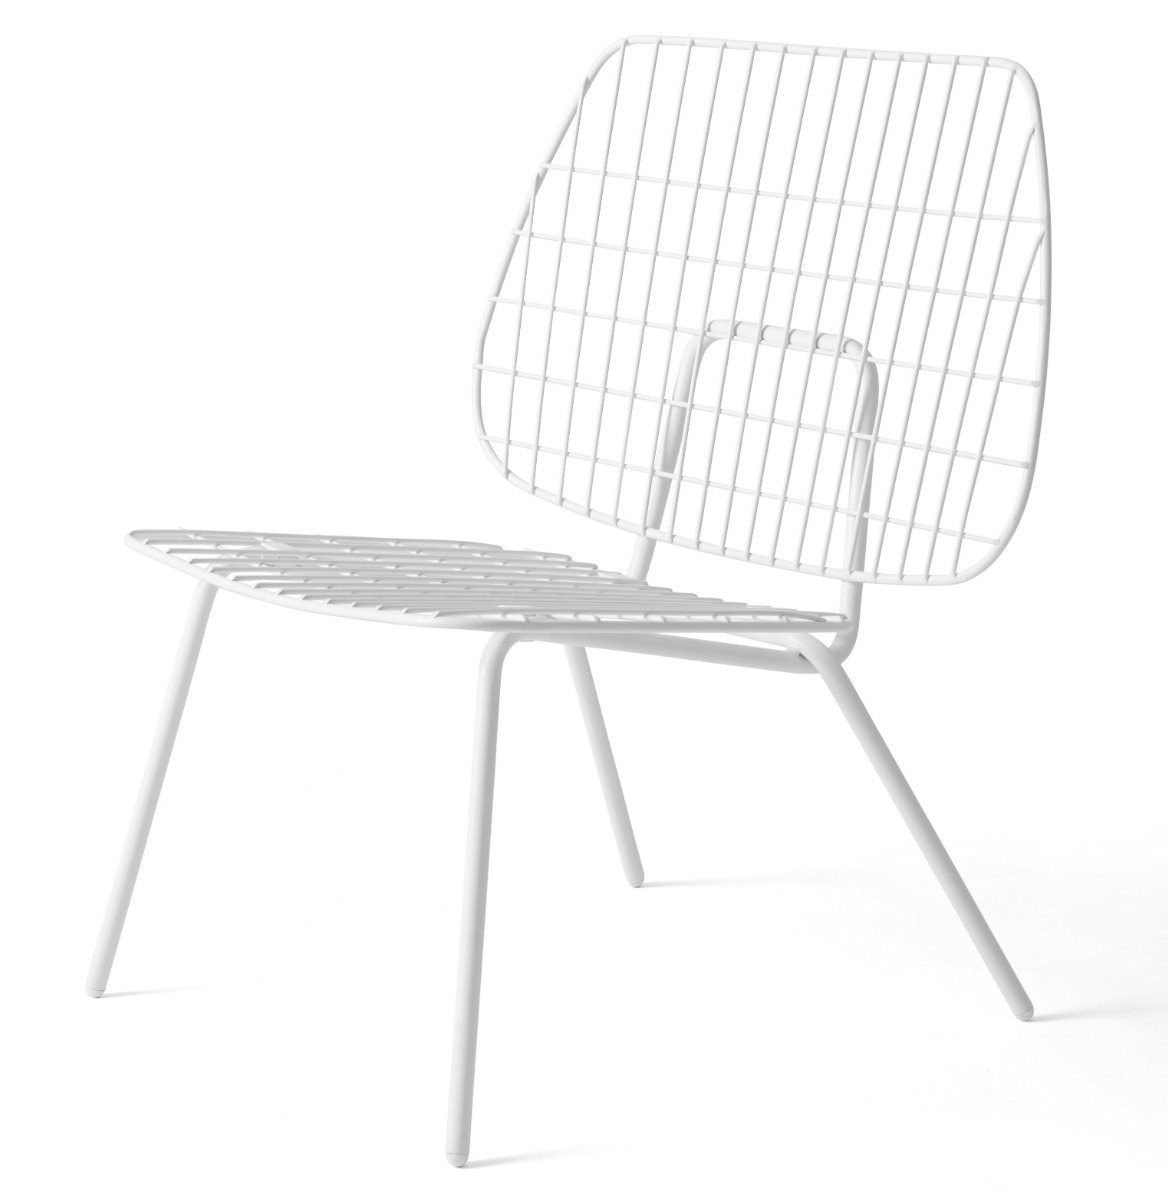 https://www.fundesign.nl/media/catalog/product/9/5/9500639_wm_string_lounge_chair_white_02.jpg